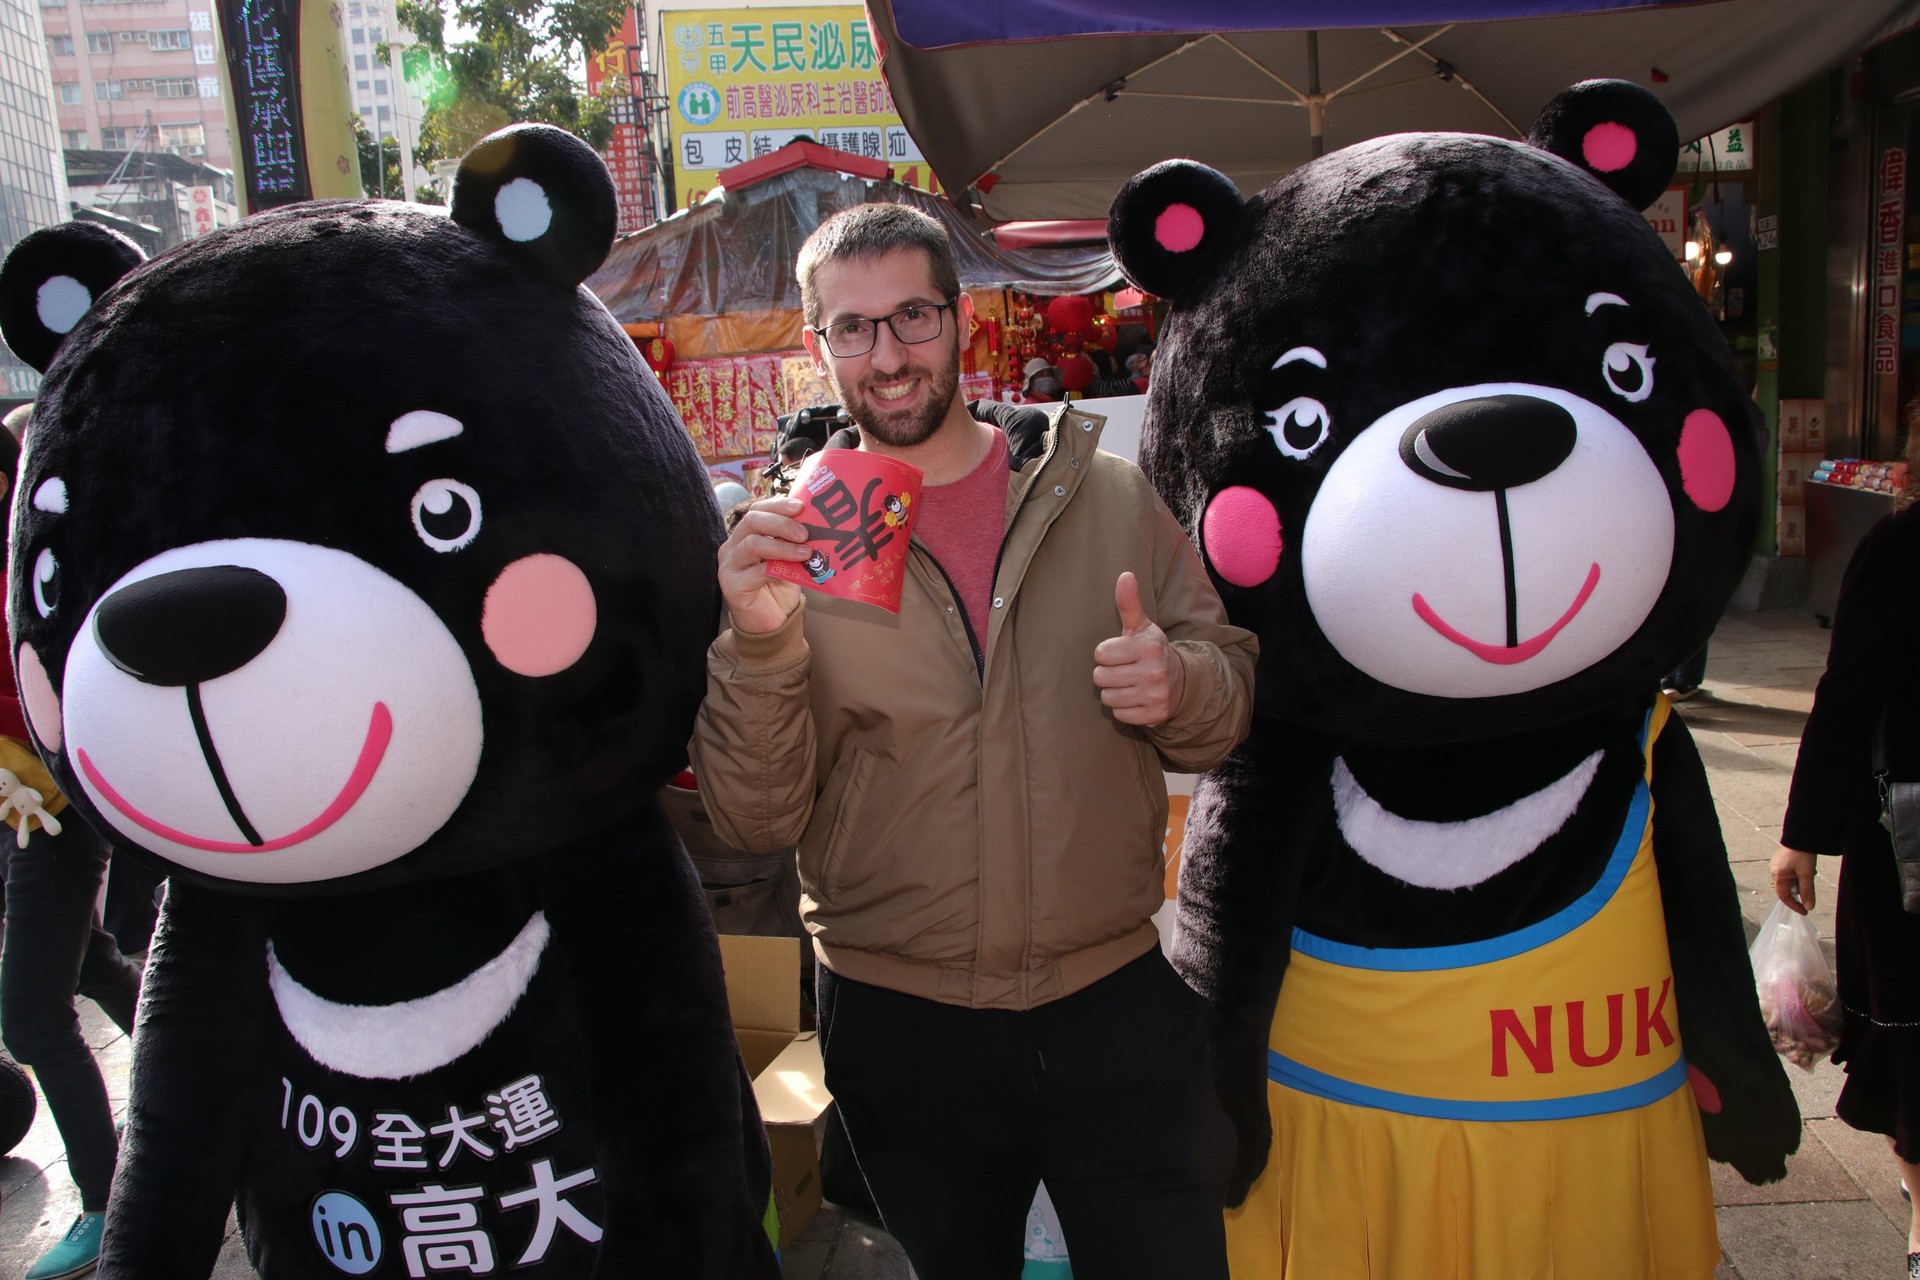 外國人士與全大運吉祥物「熊高高」、「熊啦啦」合影